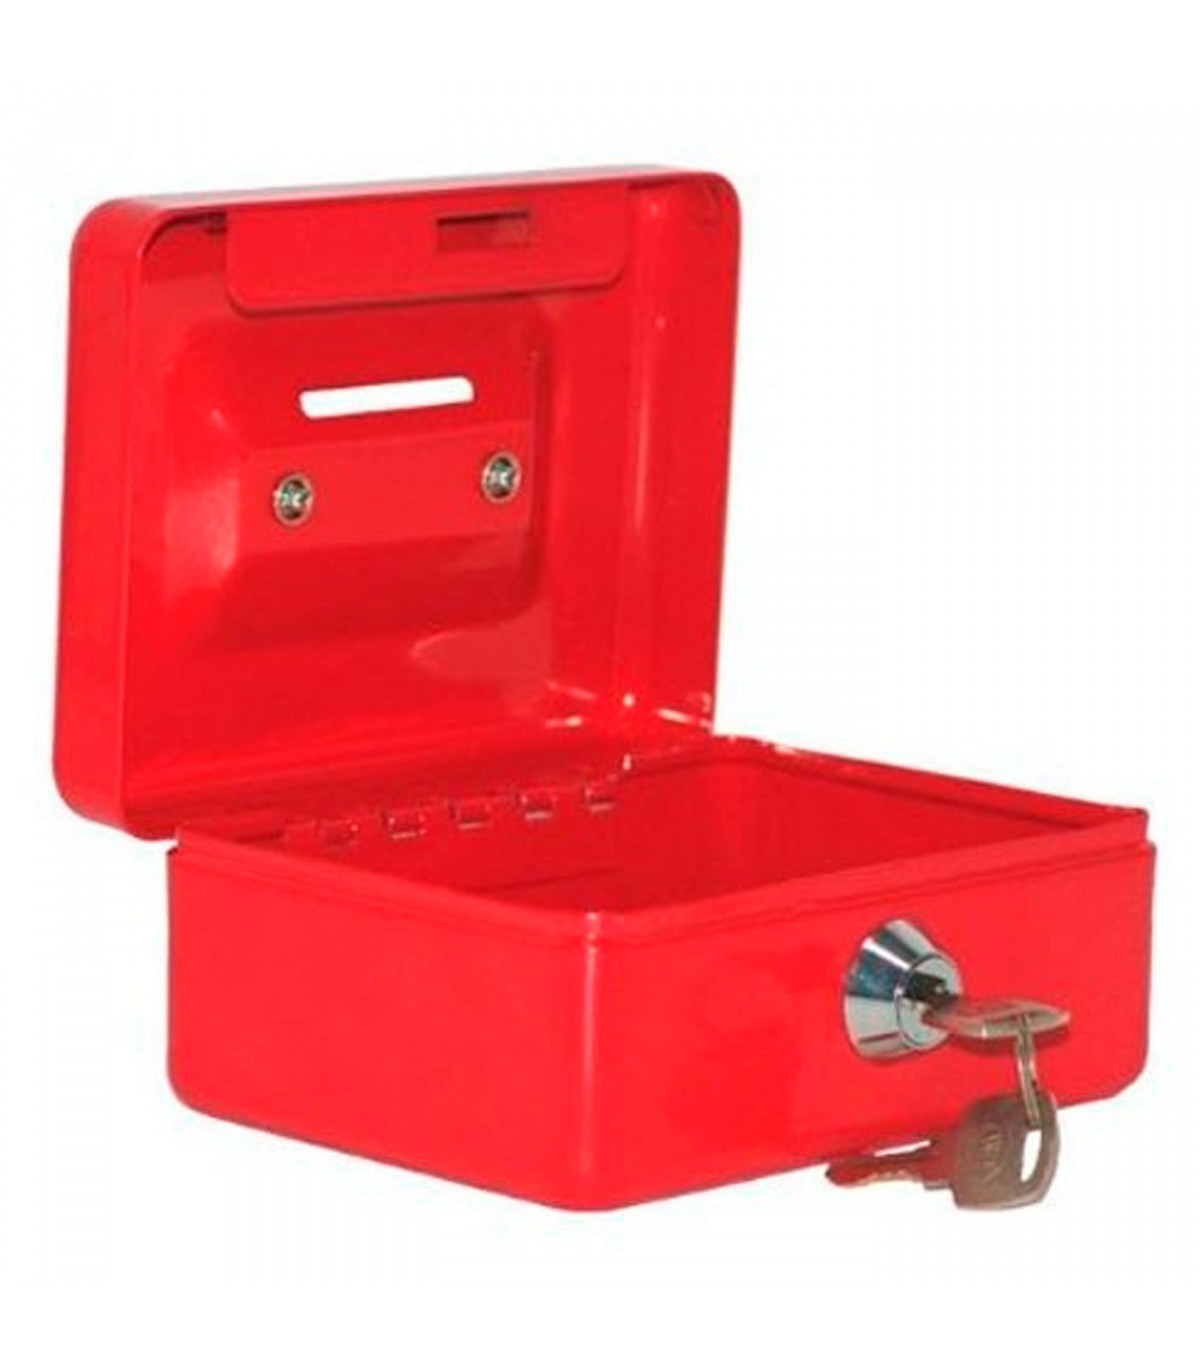 Caja de caudales metálica nº 3 con cerradura de llave, asa y bandeja con  compartimentos para dinero, monedas y billetes, 9 x 20